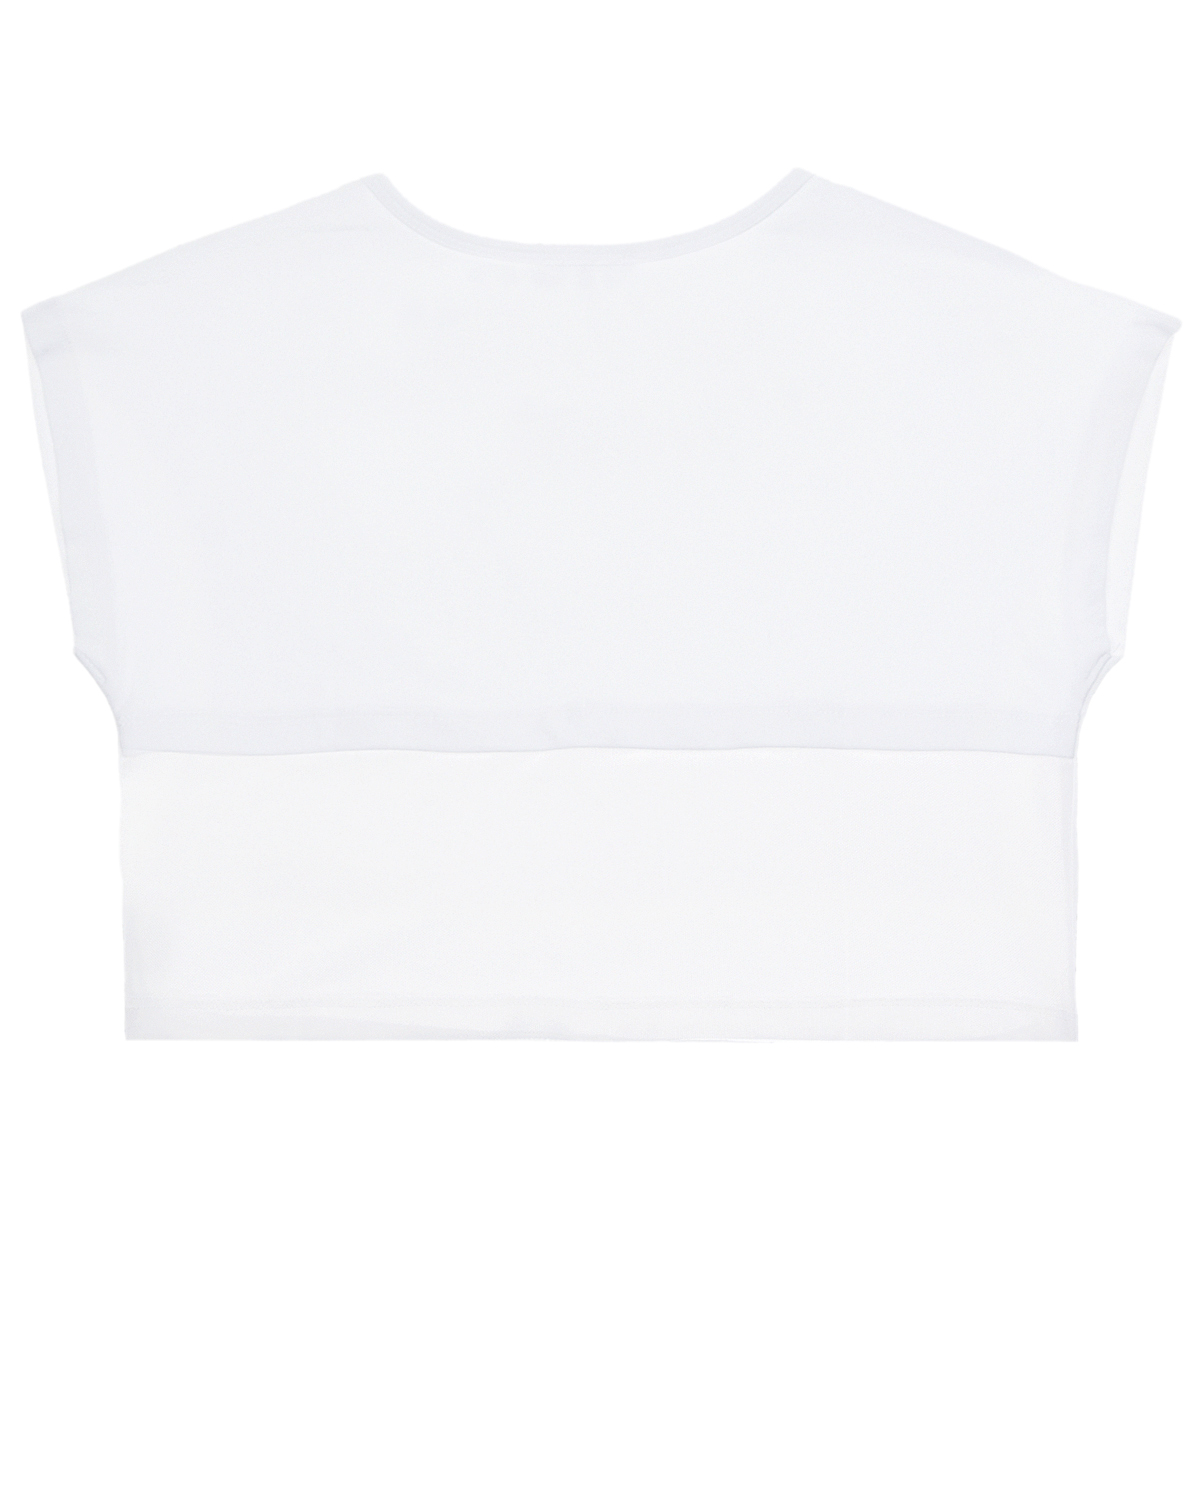 Укороченная футболка с контрастным лого Monnalisa детская, размер 128, цвет белый - фото 2